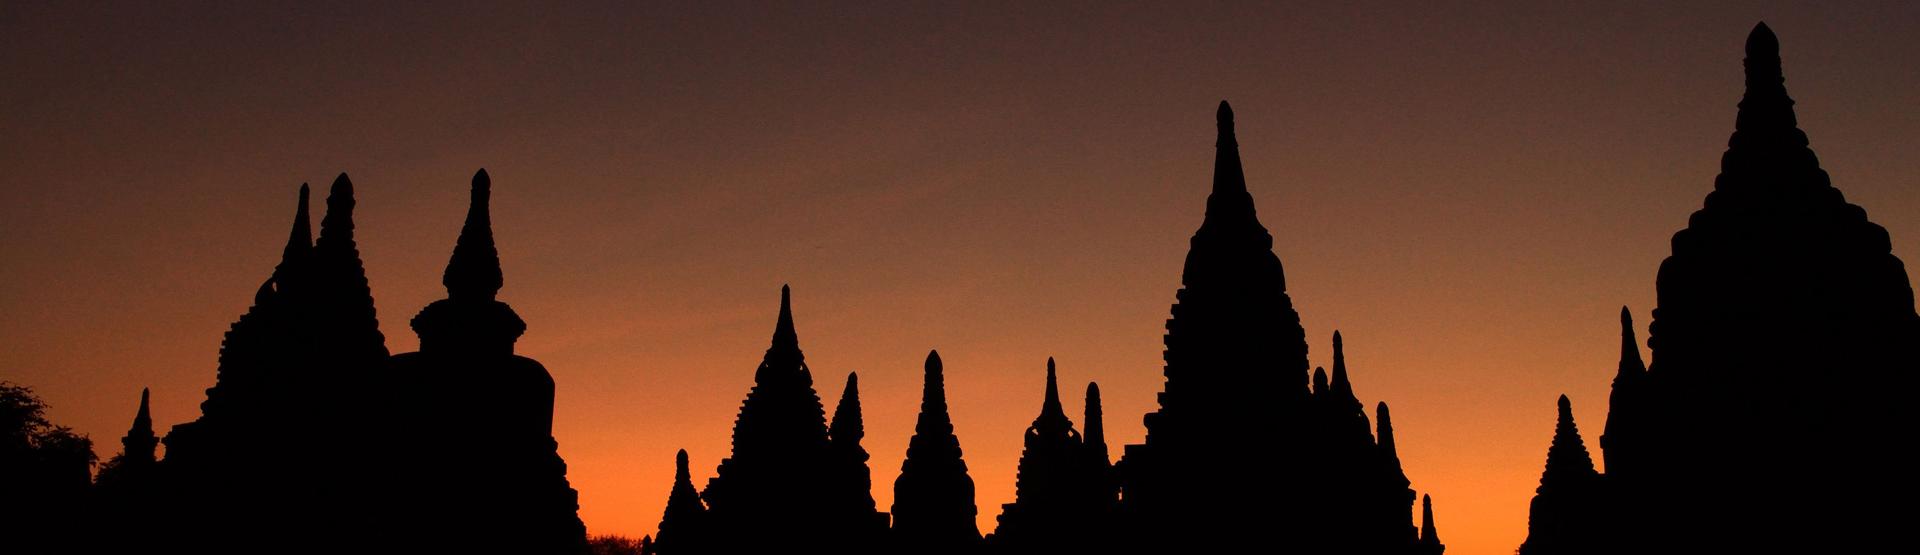 Le site de Bagan, l'un des lieux les plus touristiques de Birmanie. [PLANCHARD Eric - PLANCHARD Eric]